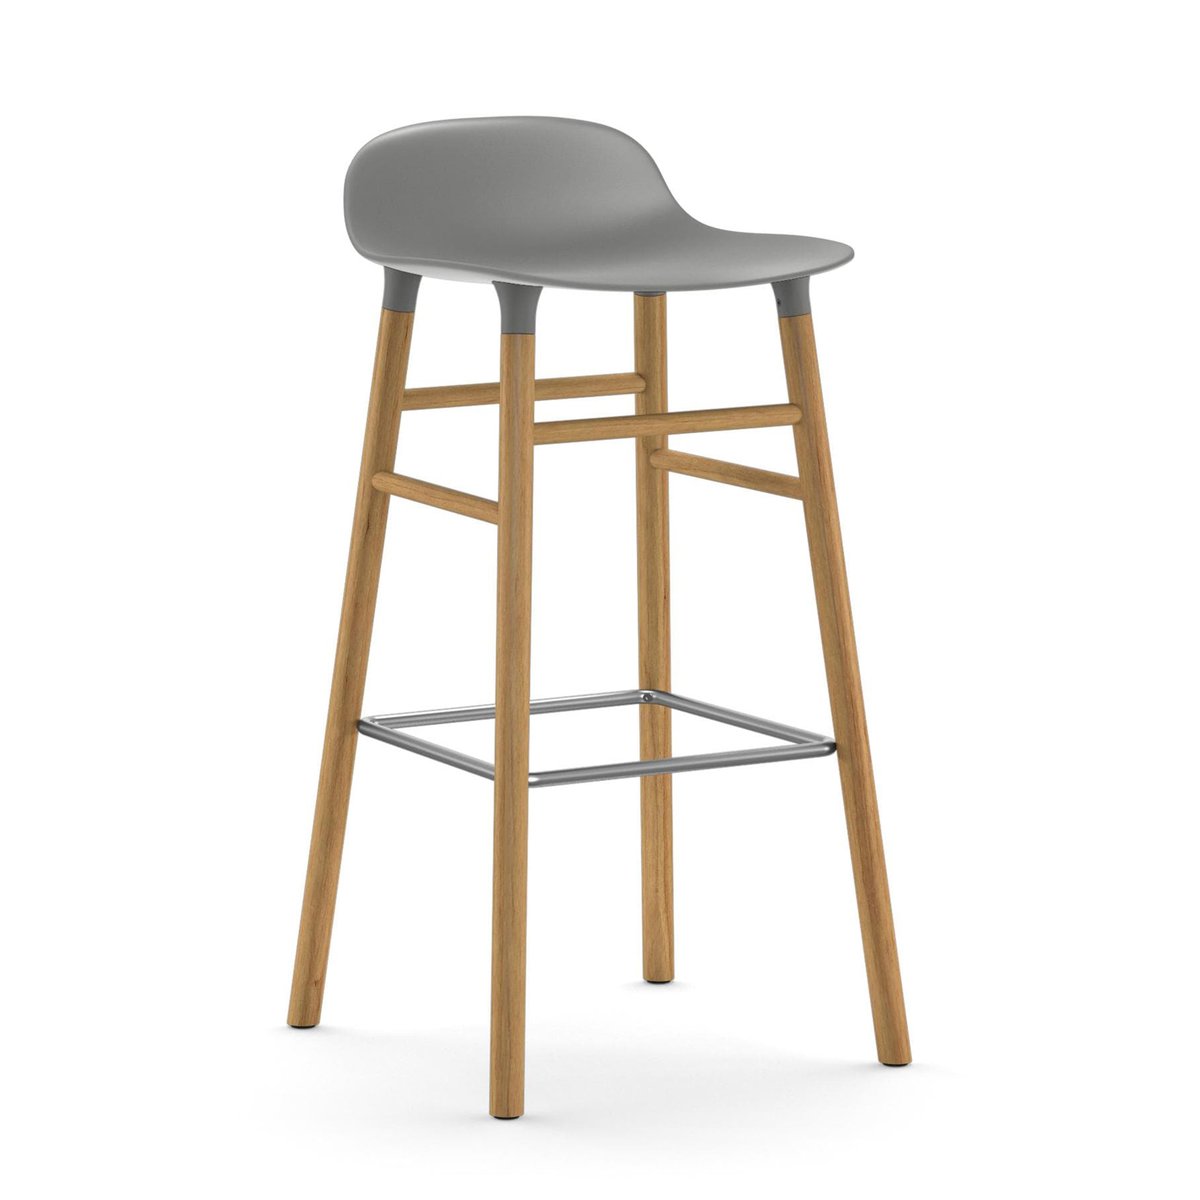 Bilde av Normann Copenhagen Form barstol eikebein 75 cm grå